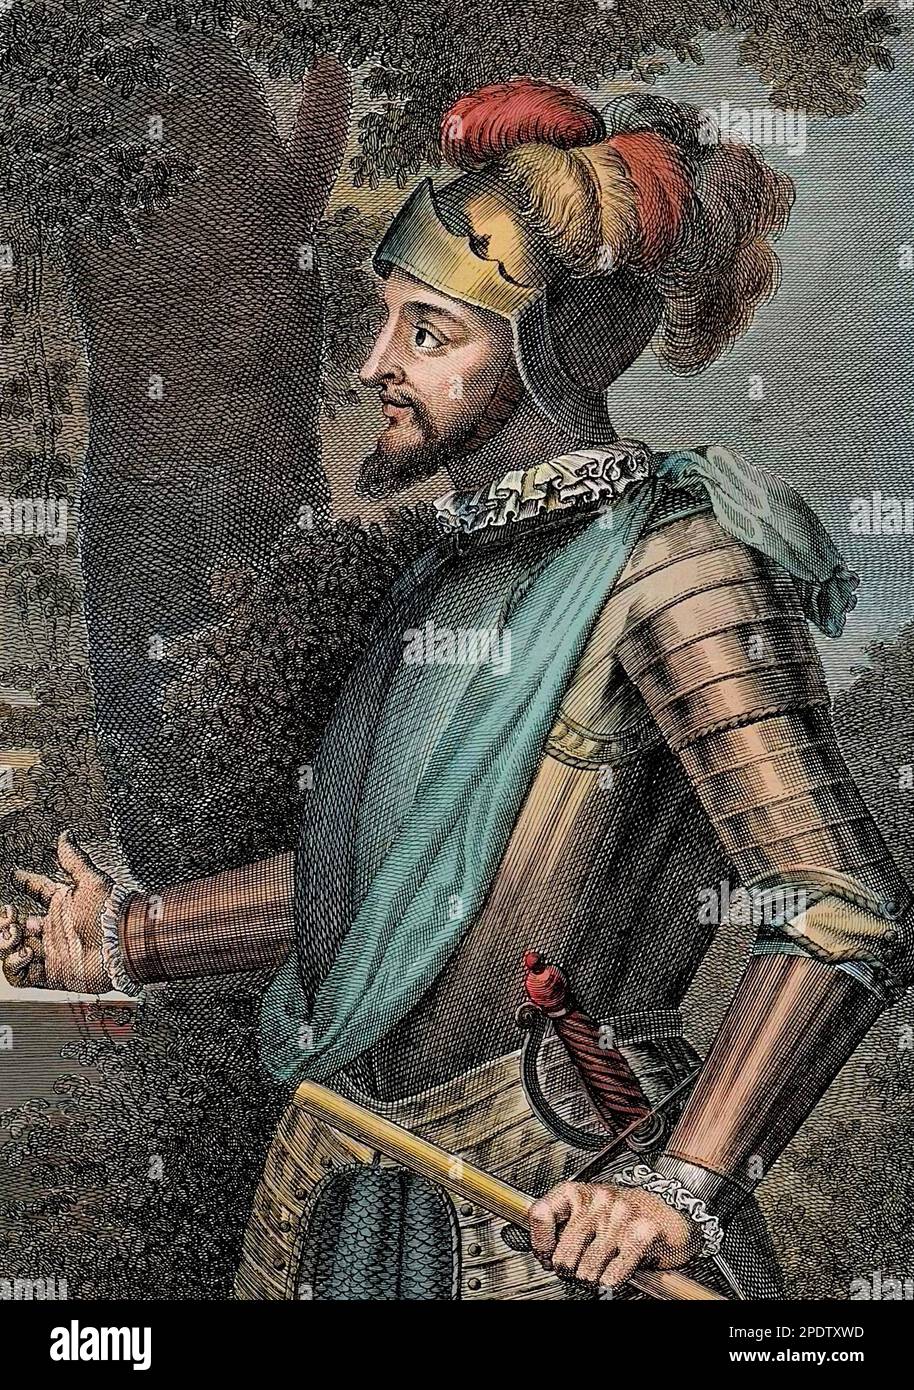 Vasco Nunez de Balboa Spanish explorer, governor, and conquistador - Portrait de Vasco Nunez de Balboa, conquistador espagnol (1475-1517) - Gravure 19eme siecle Stock Photo